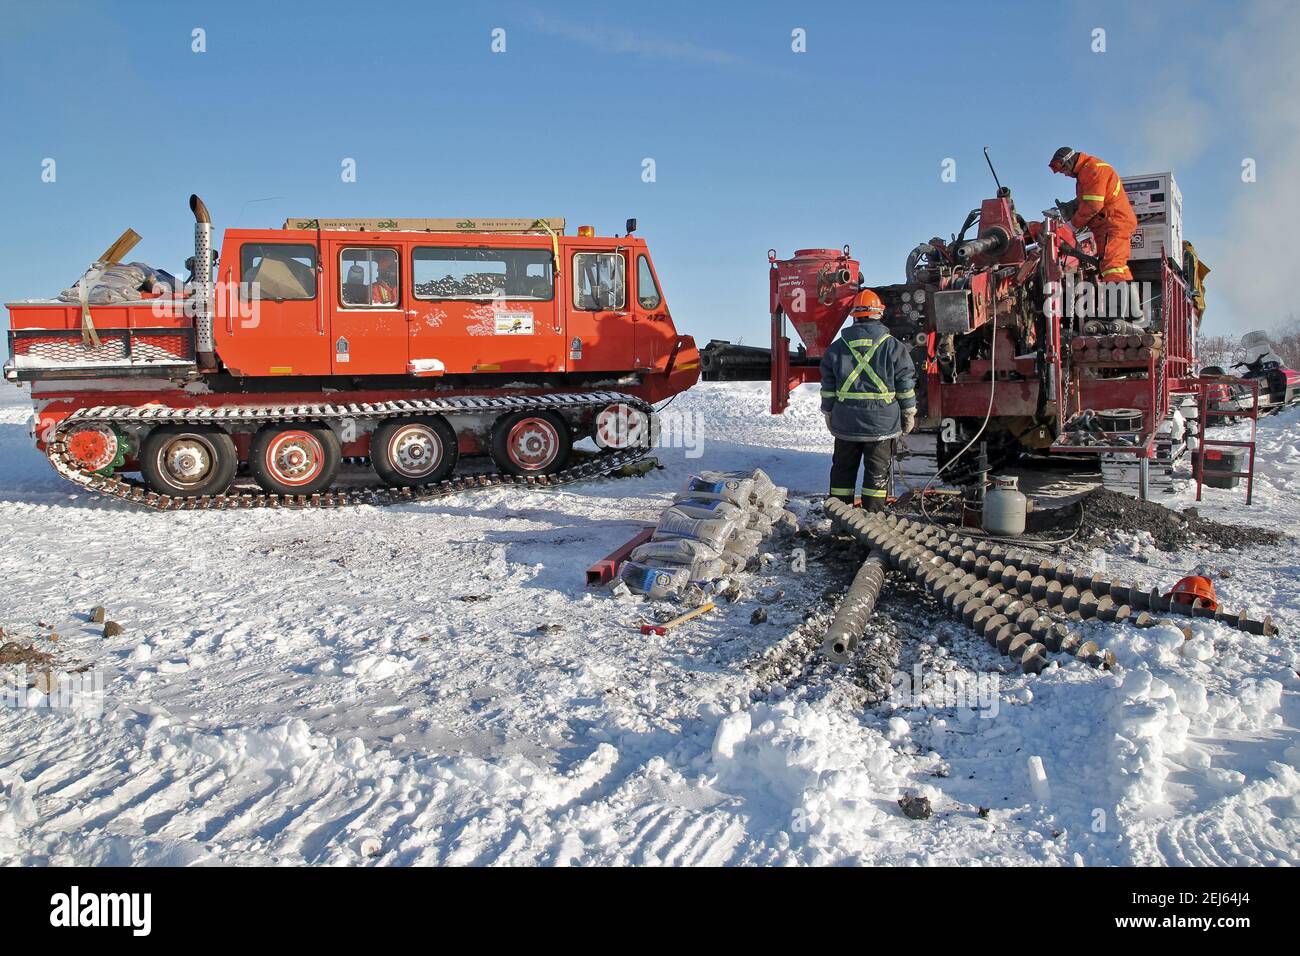 Geotech-Bohrgerät testet Kiesquellen für den Inuvik-Tuktoyaktuk Highway während des Winterbaus, Nordwest-Territorien, Kanadas Arktis. Stockfoto